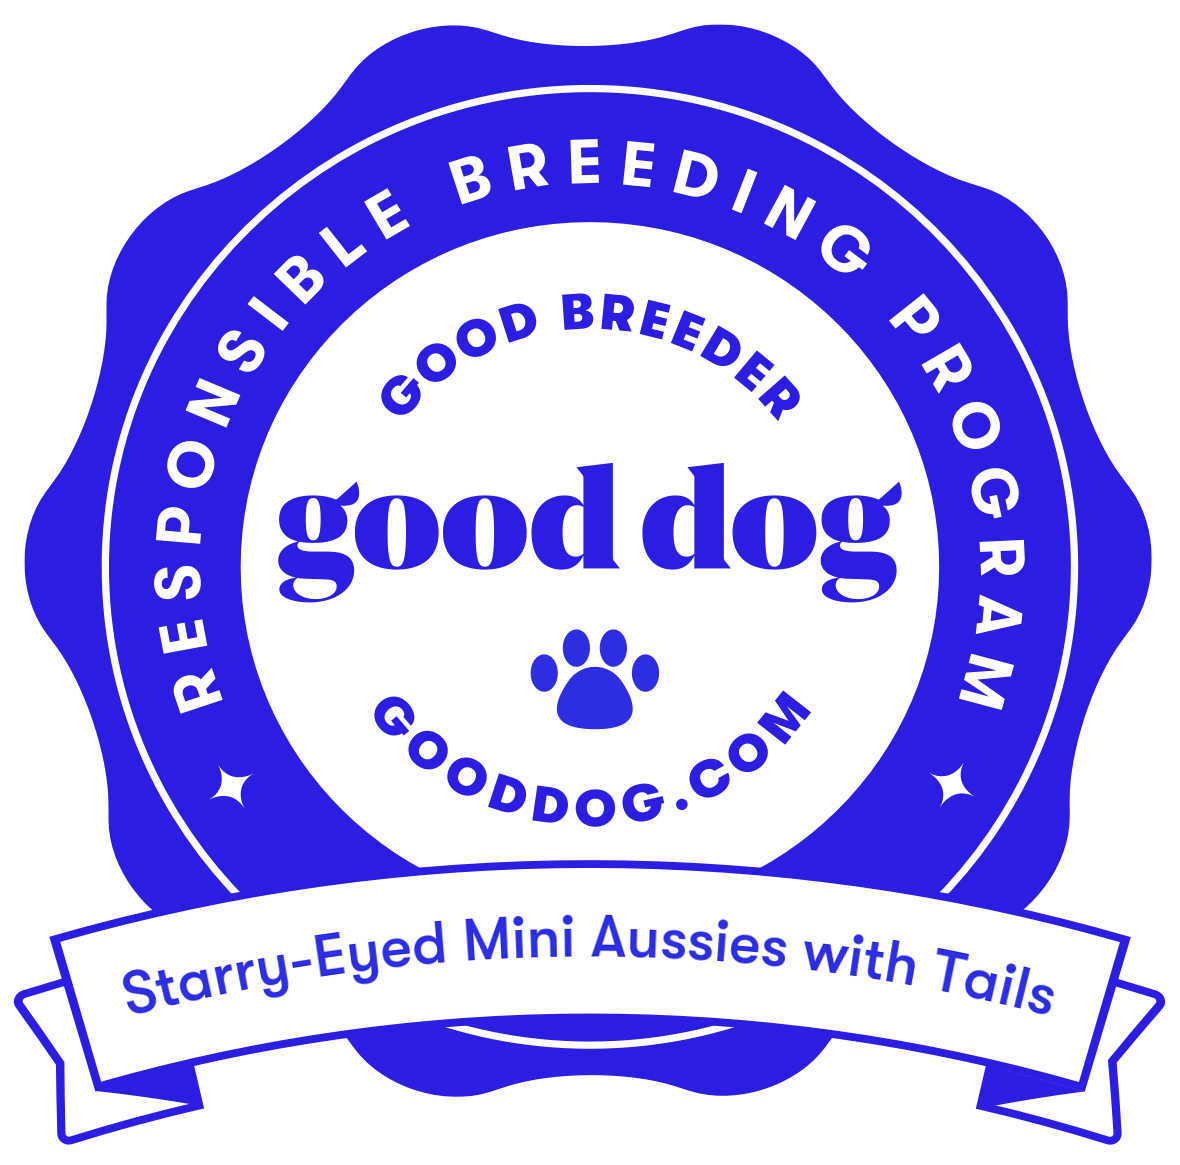 Certified GoodDog Breeder